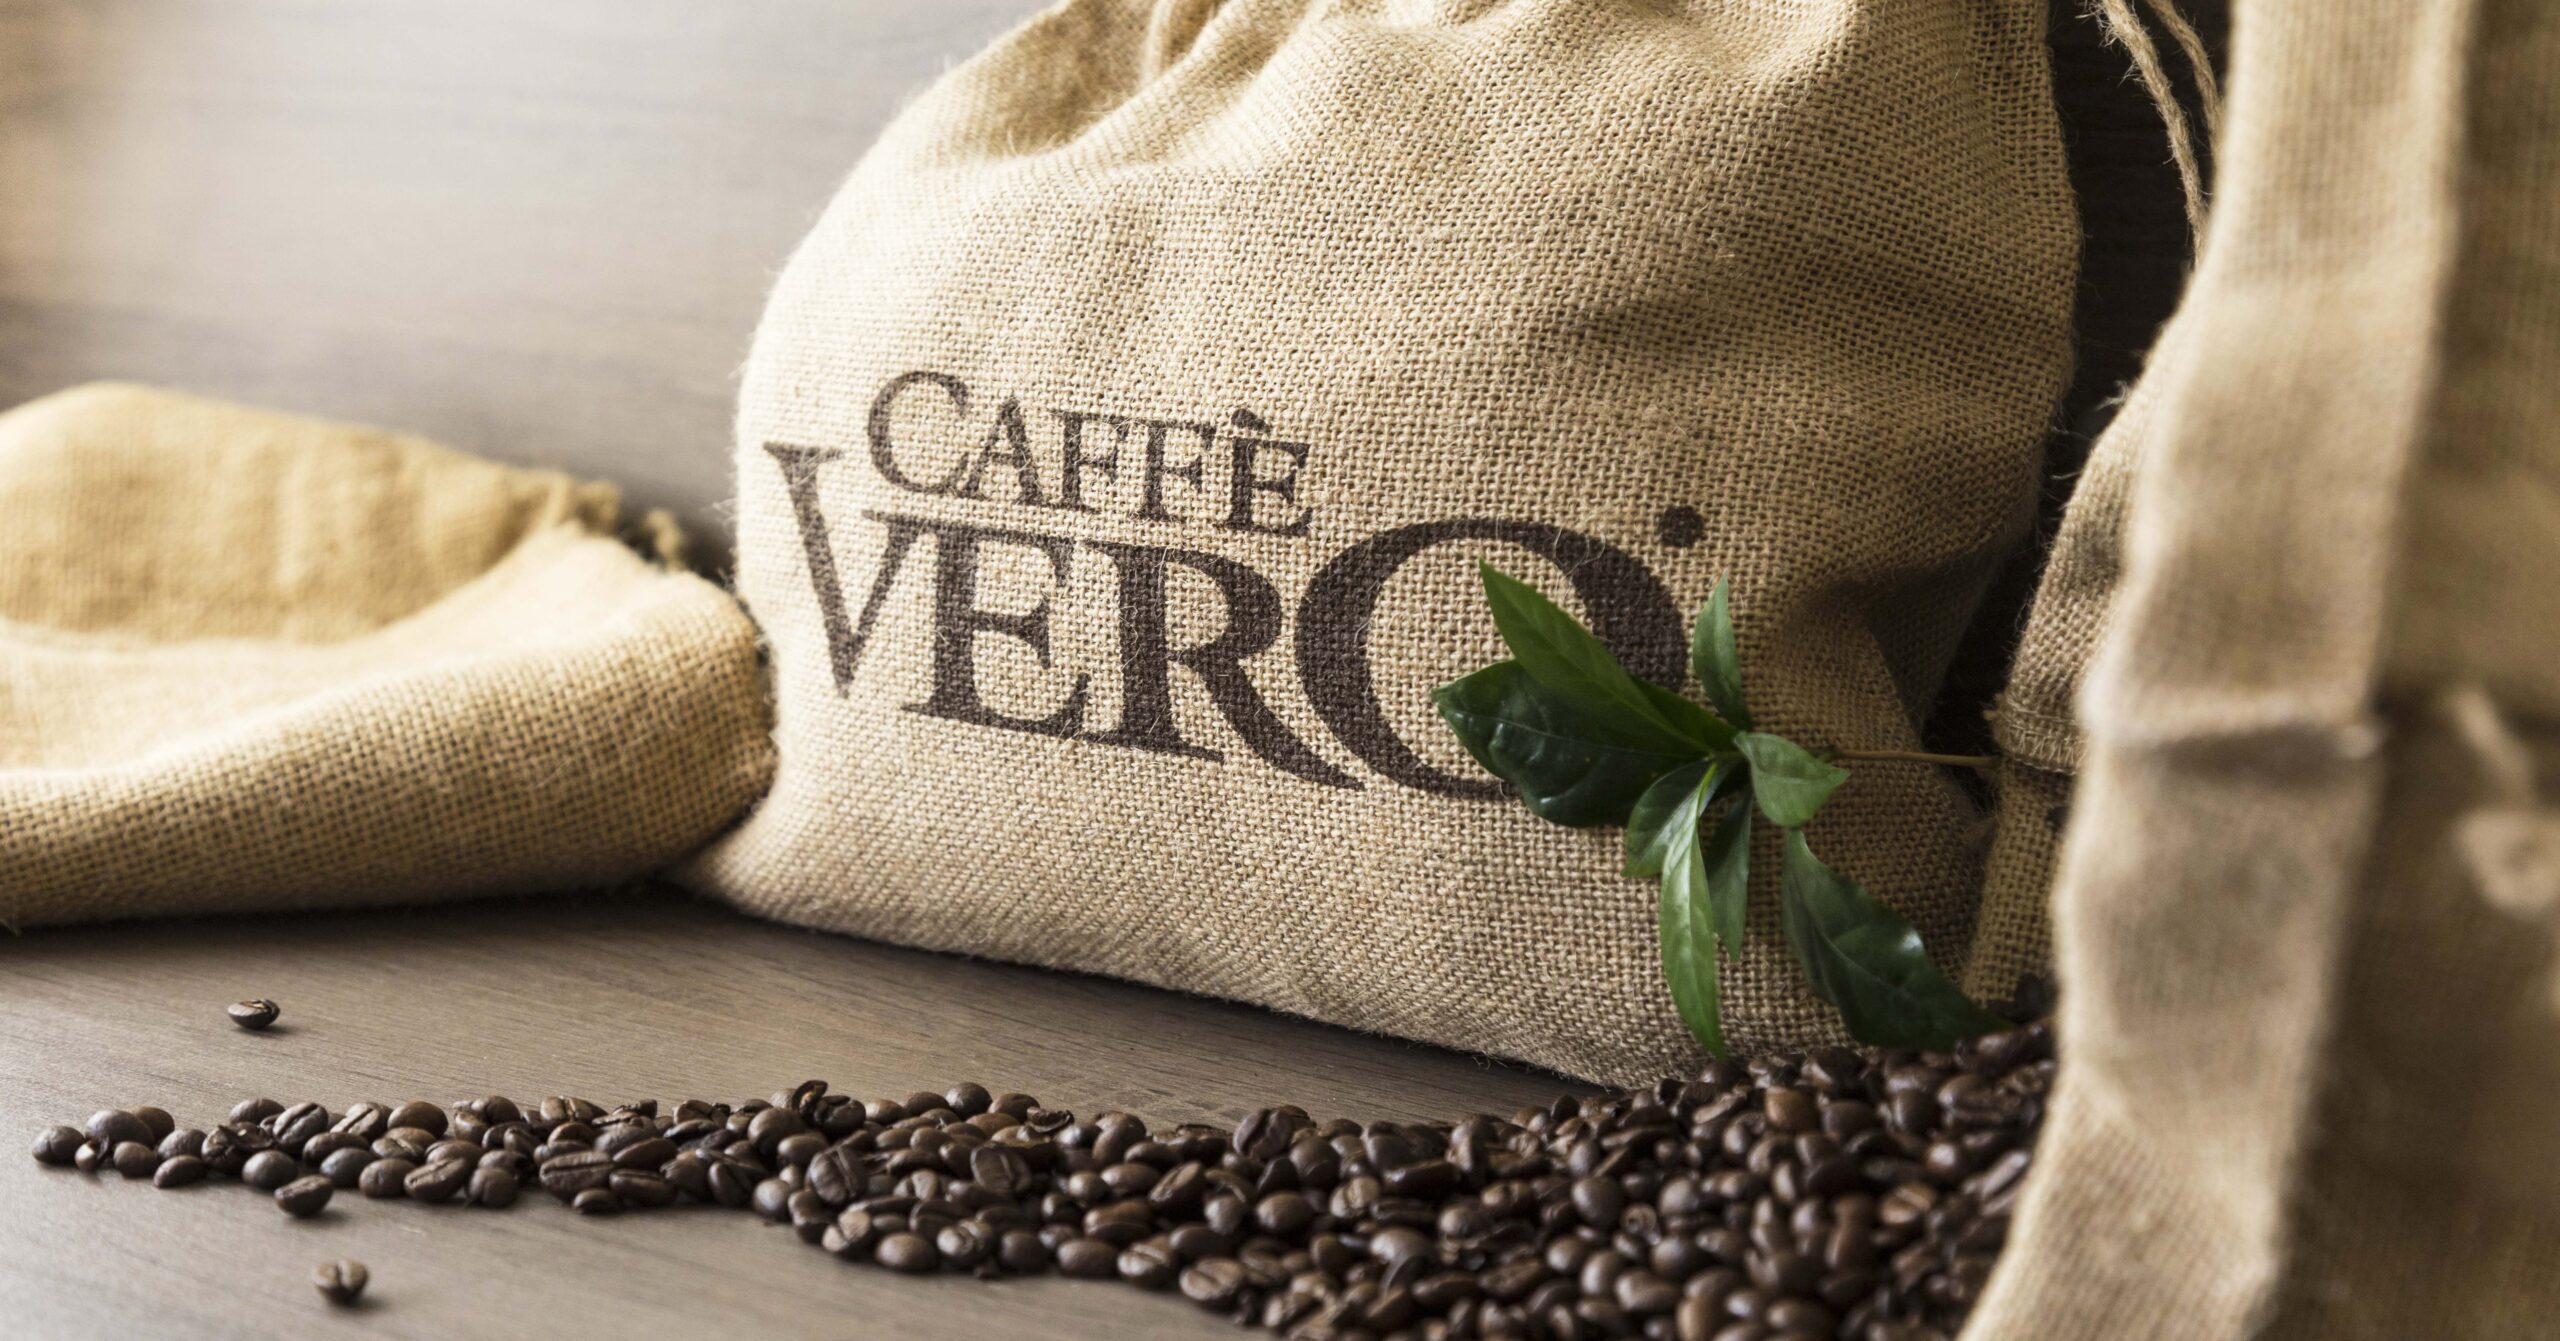 Caffe-Vero.nl